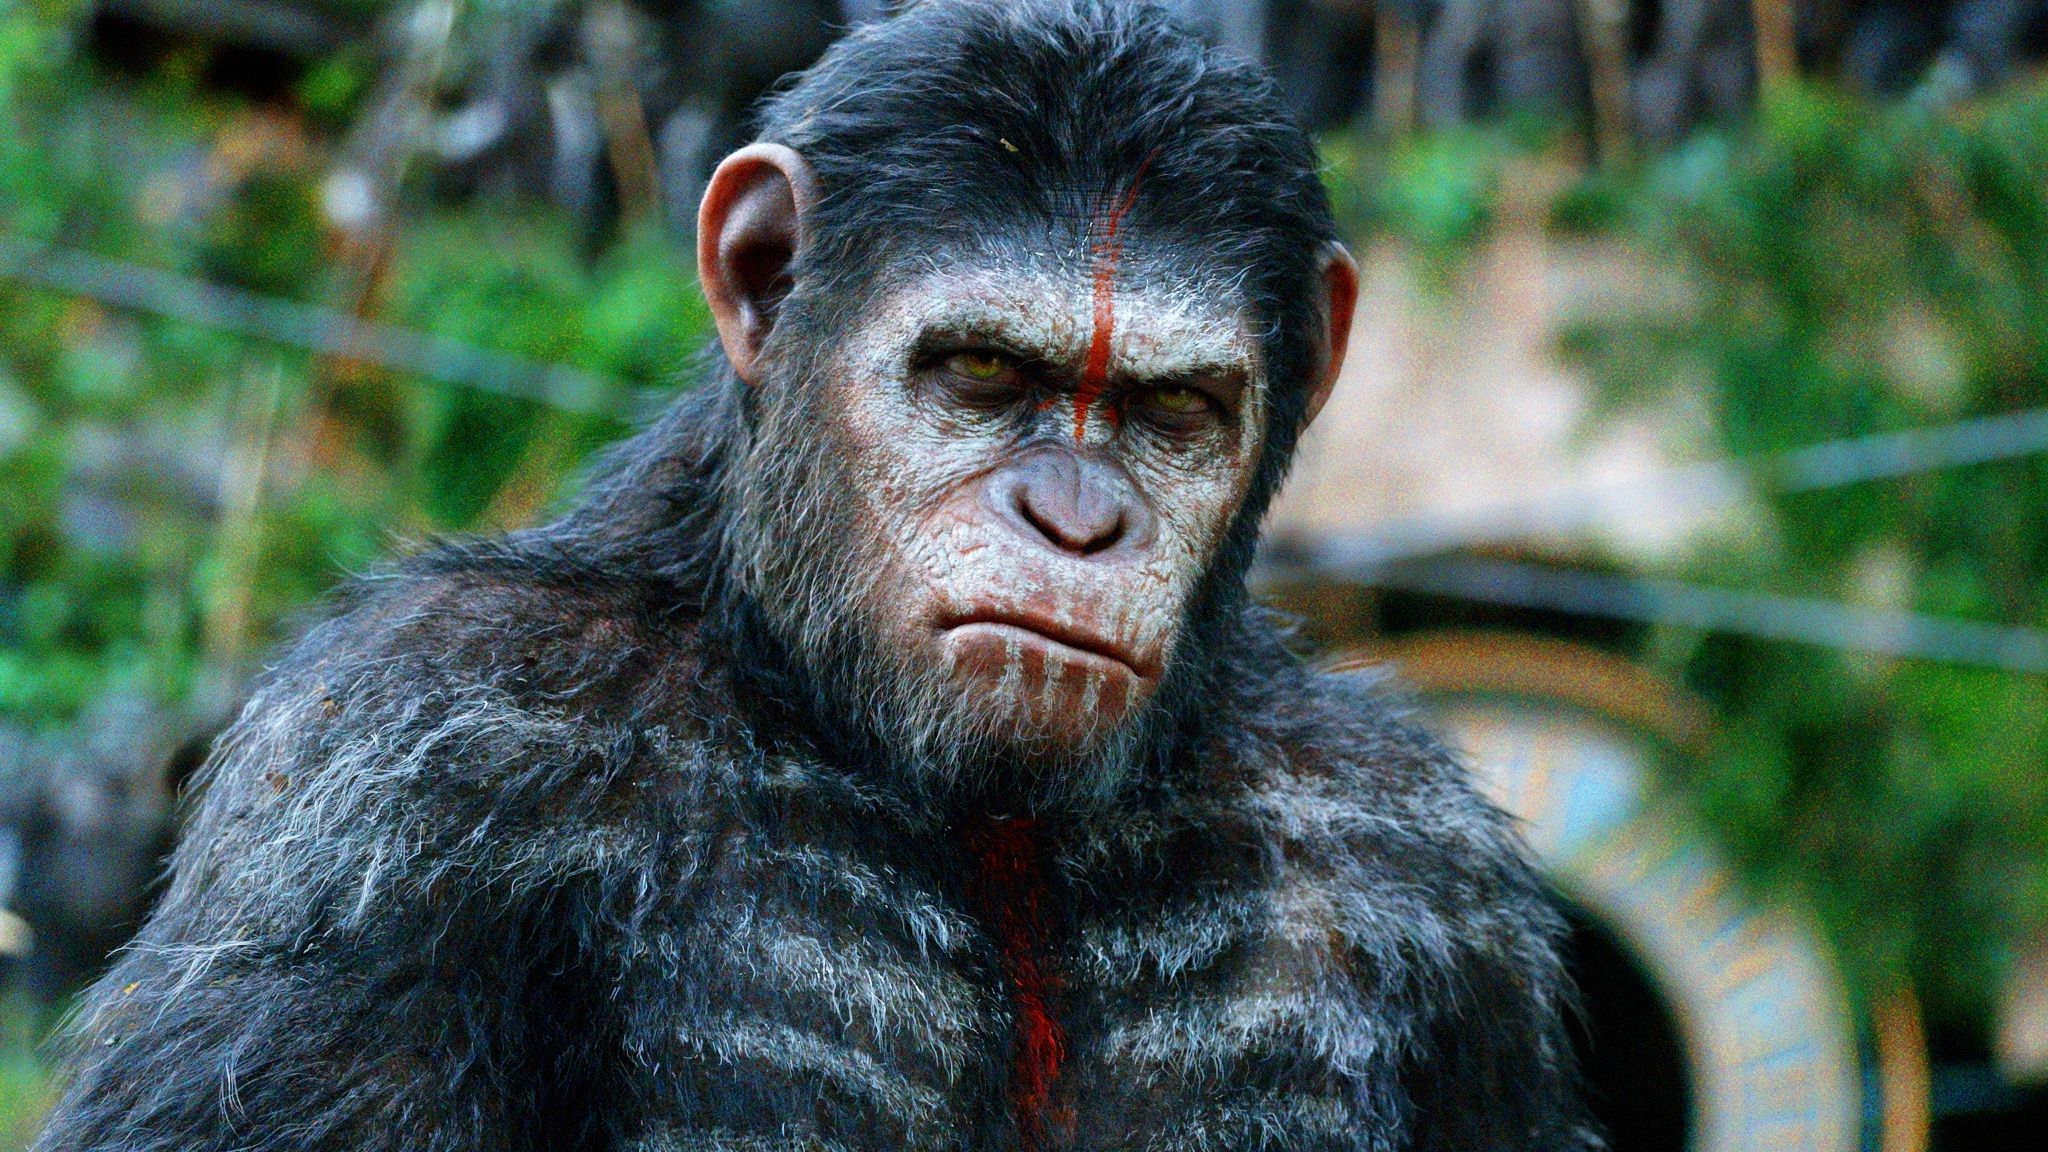 guerre pour la planète des singes fond d'écran,chimpanzé commun,primate,museau,animal terrestre,œil